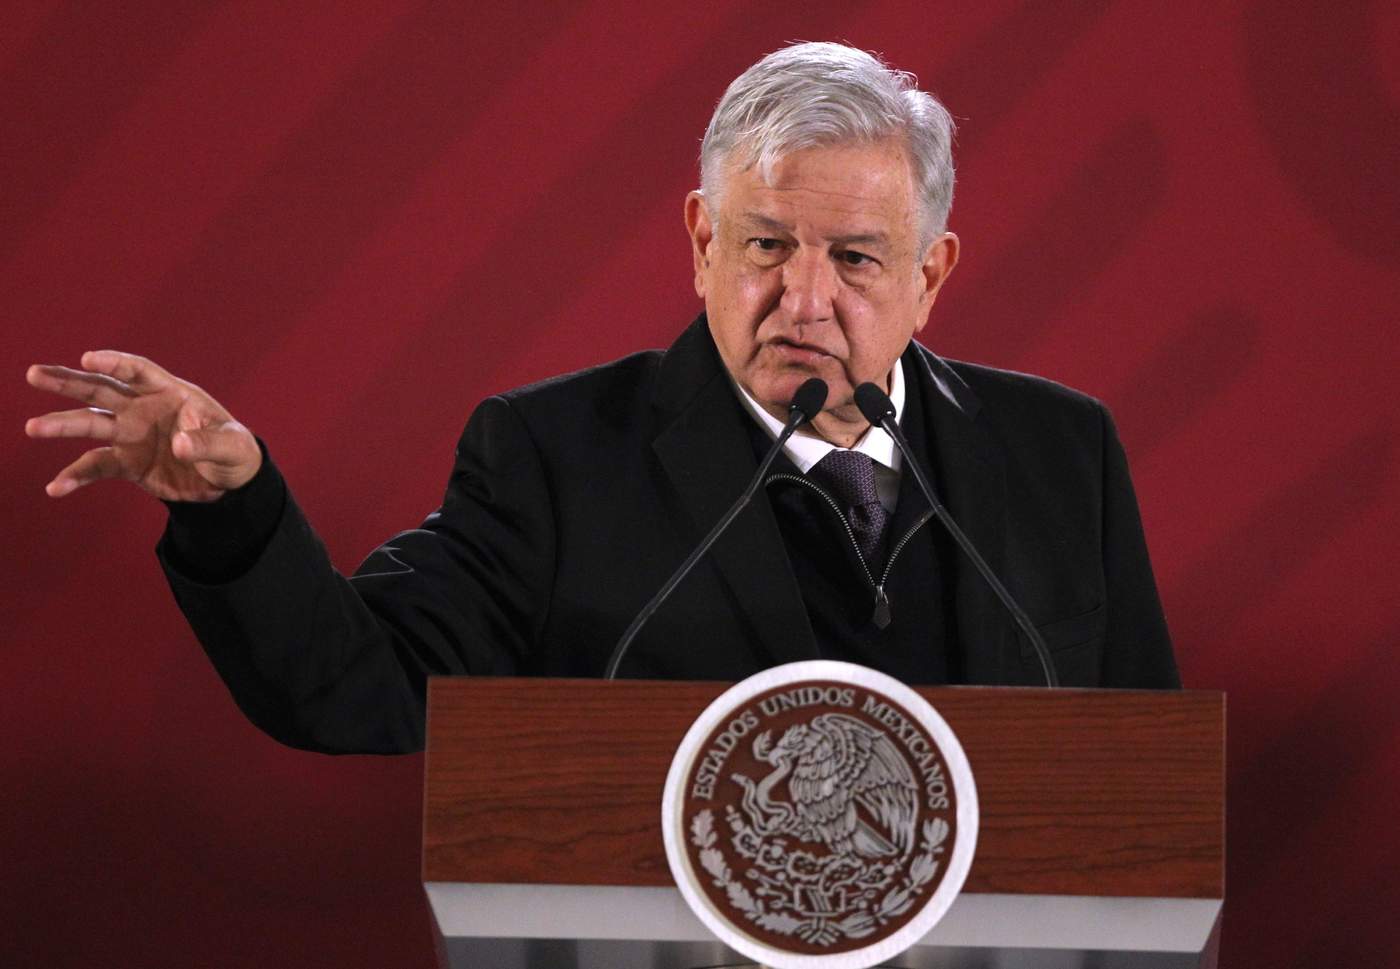 El presidente mexicano Andrés Manuel López Obrador dijo que “neofascistas” y conservadores culpan al gobierno del accidente de un helicóptero que dejó muertos a dos políticos de la oposición. (EFE)